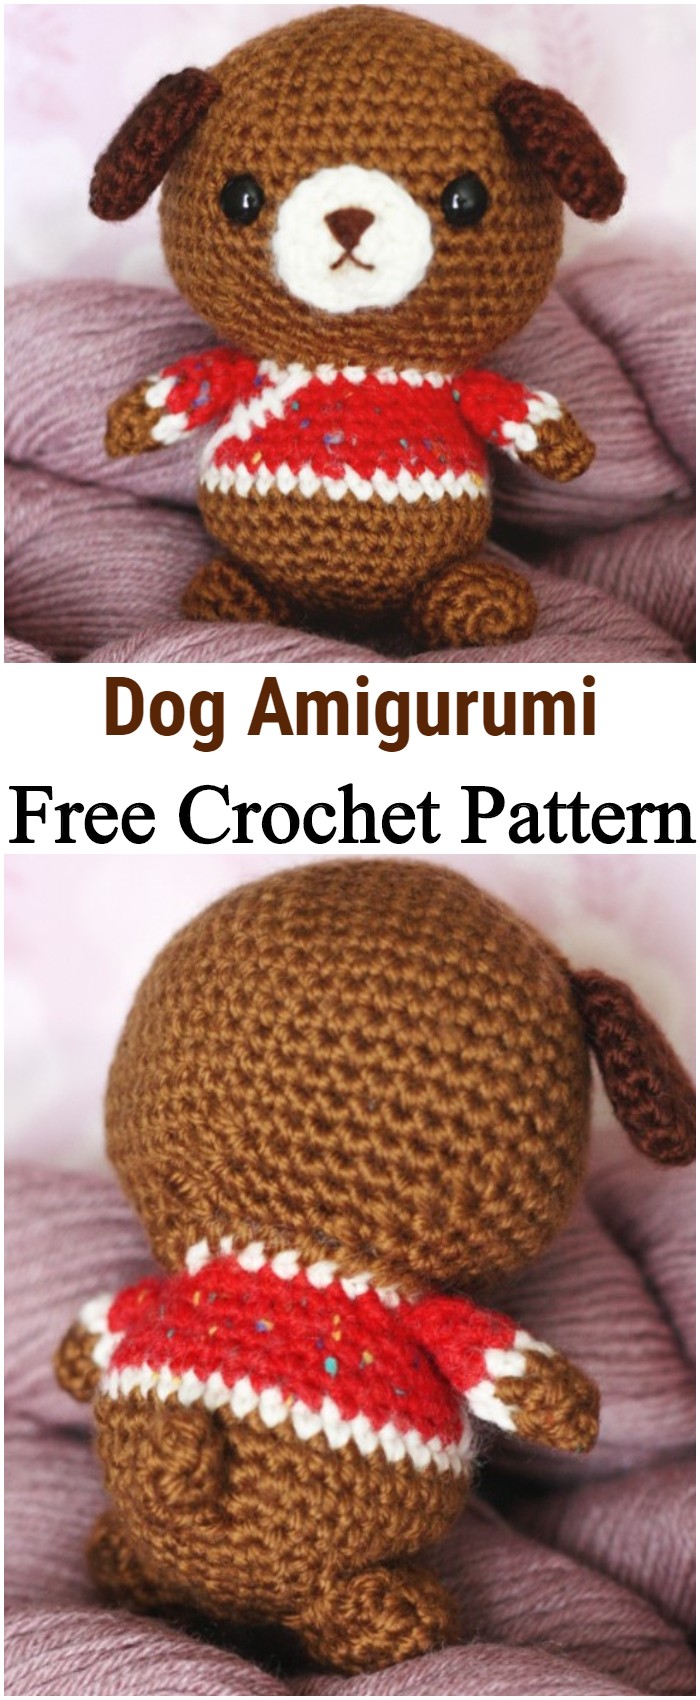 Crochet Dog Amigurumi